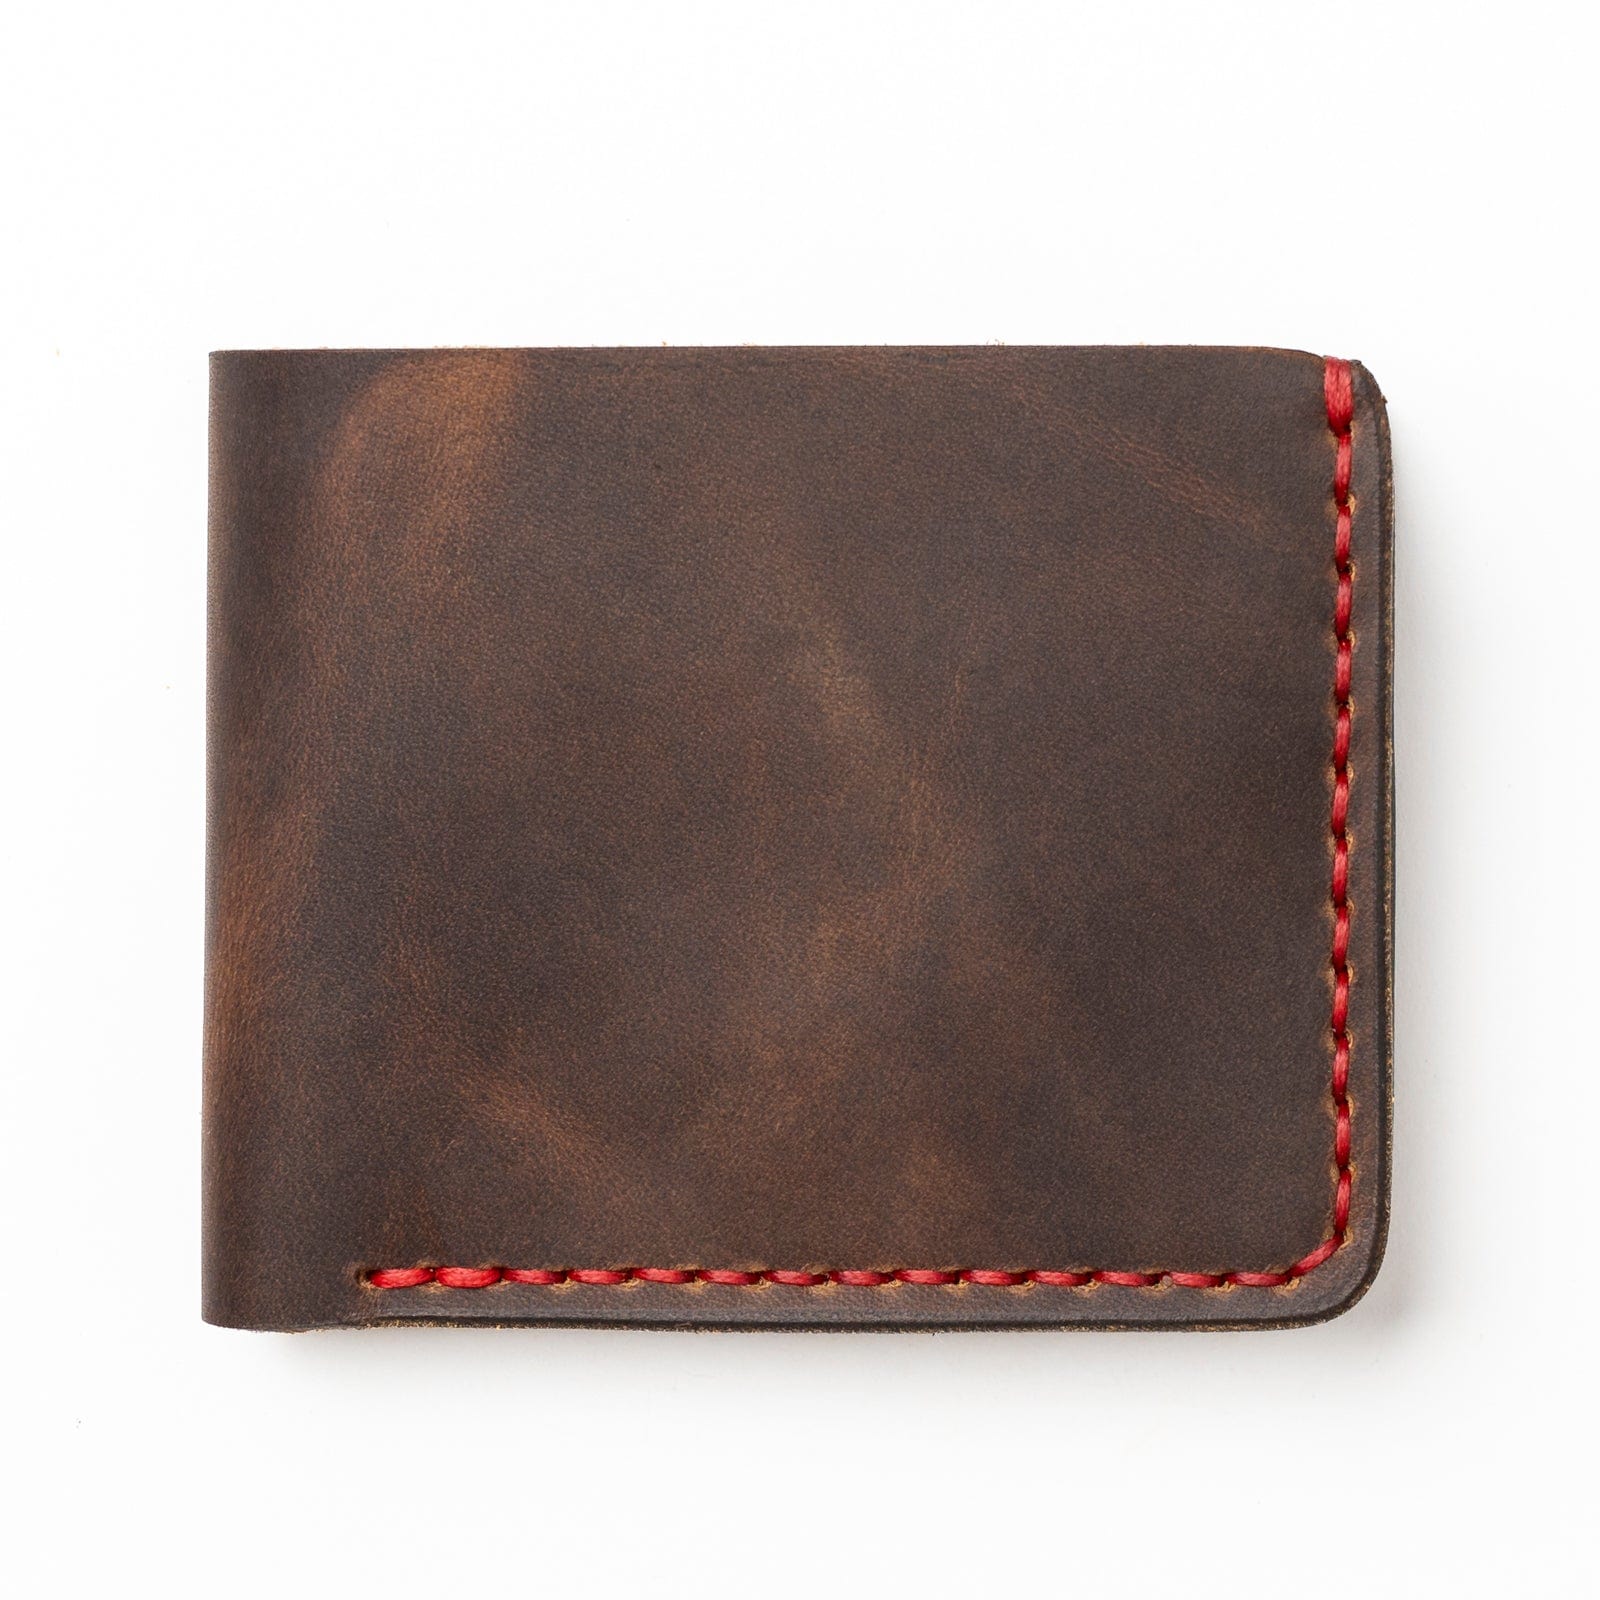 Leather men's wallet designed by expert craftsmen